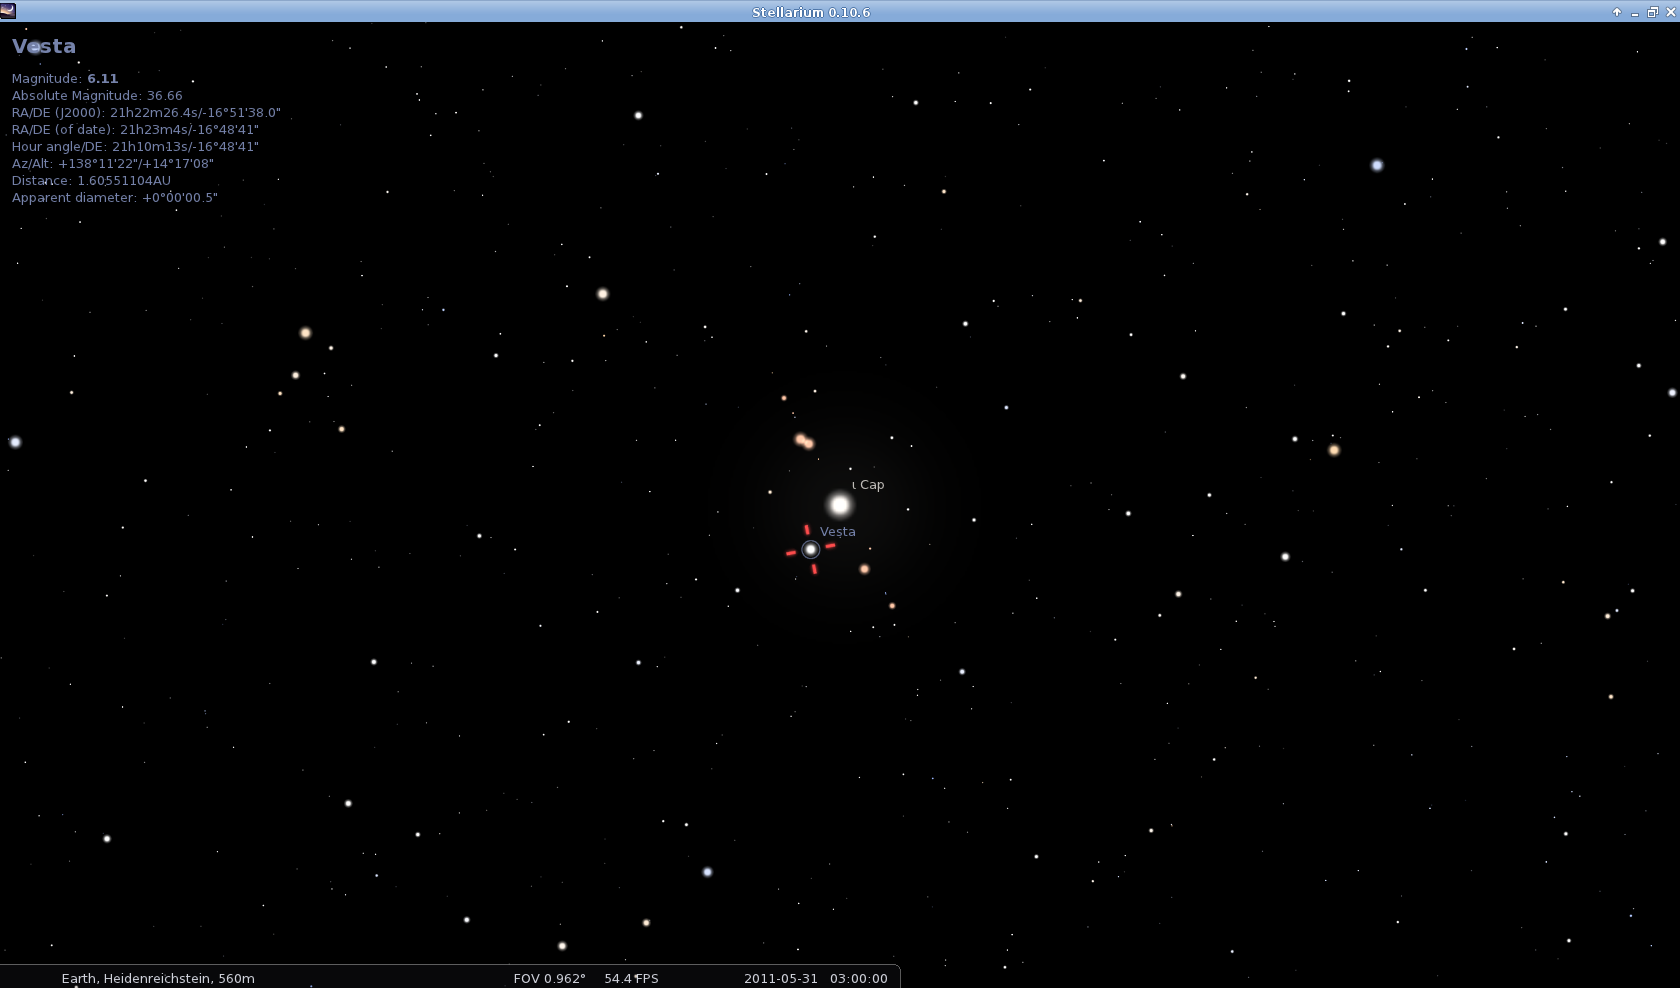 Location of Vesta 2011-05-31 03:00